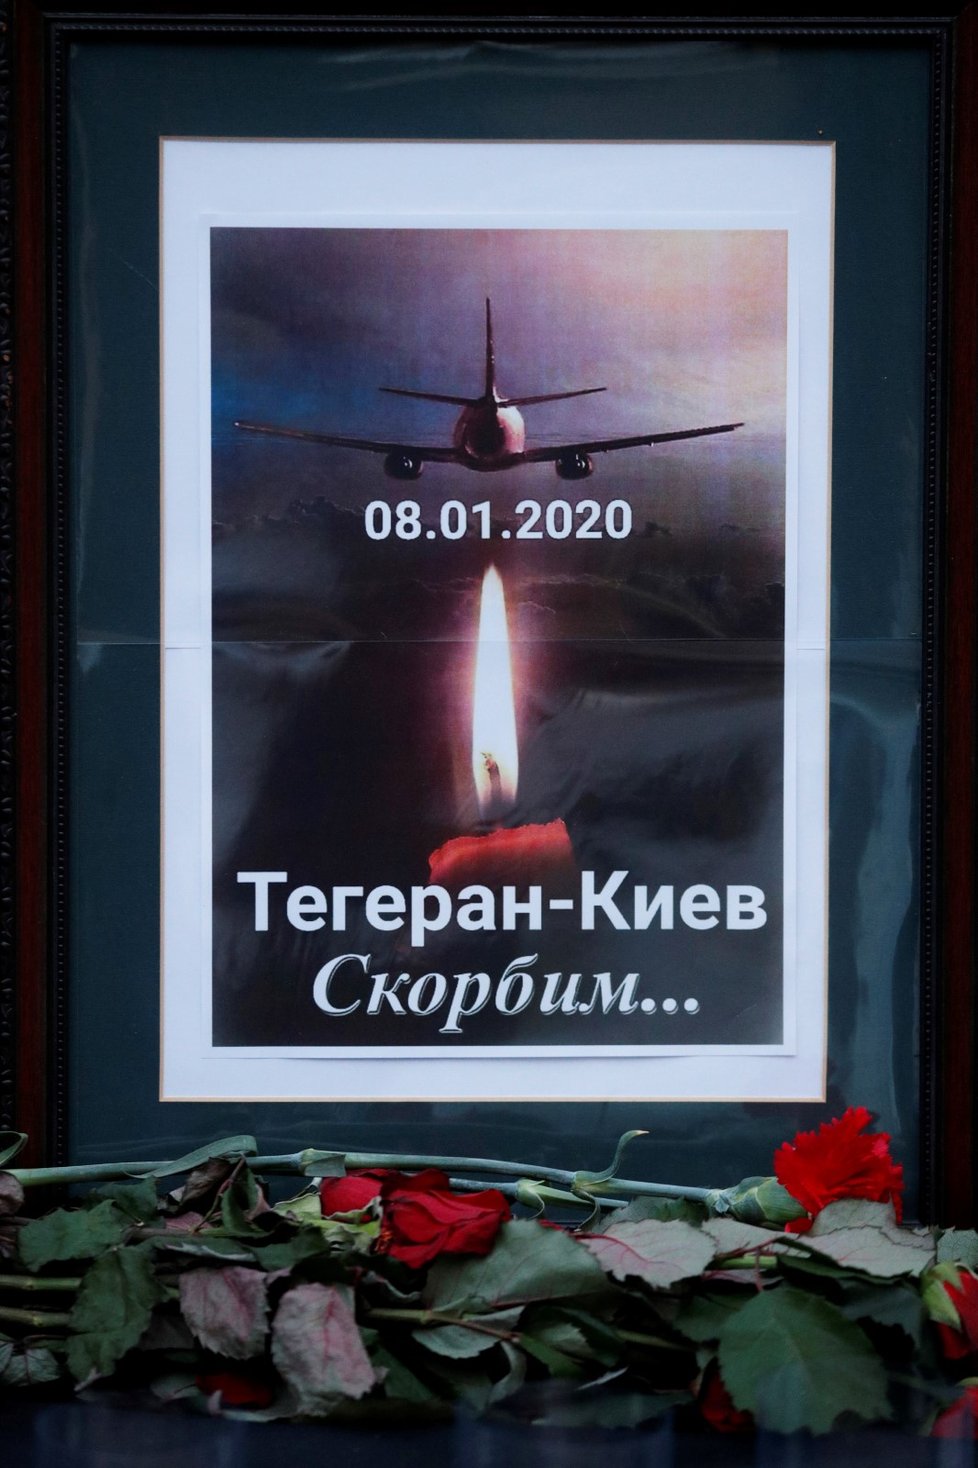 Ukrajina truchlí za oběti letecké katastrofy v Íránu.